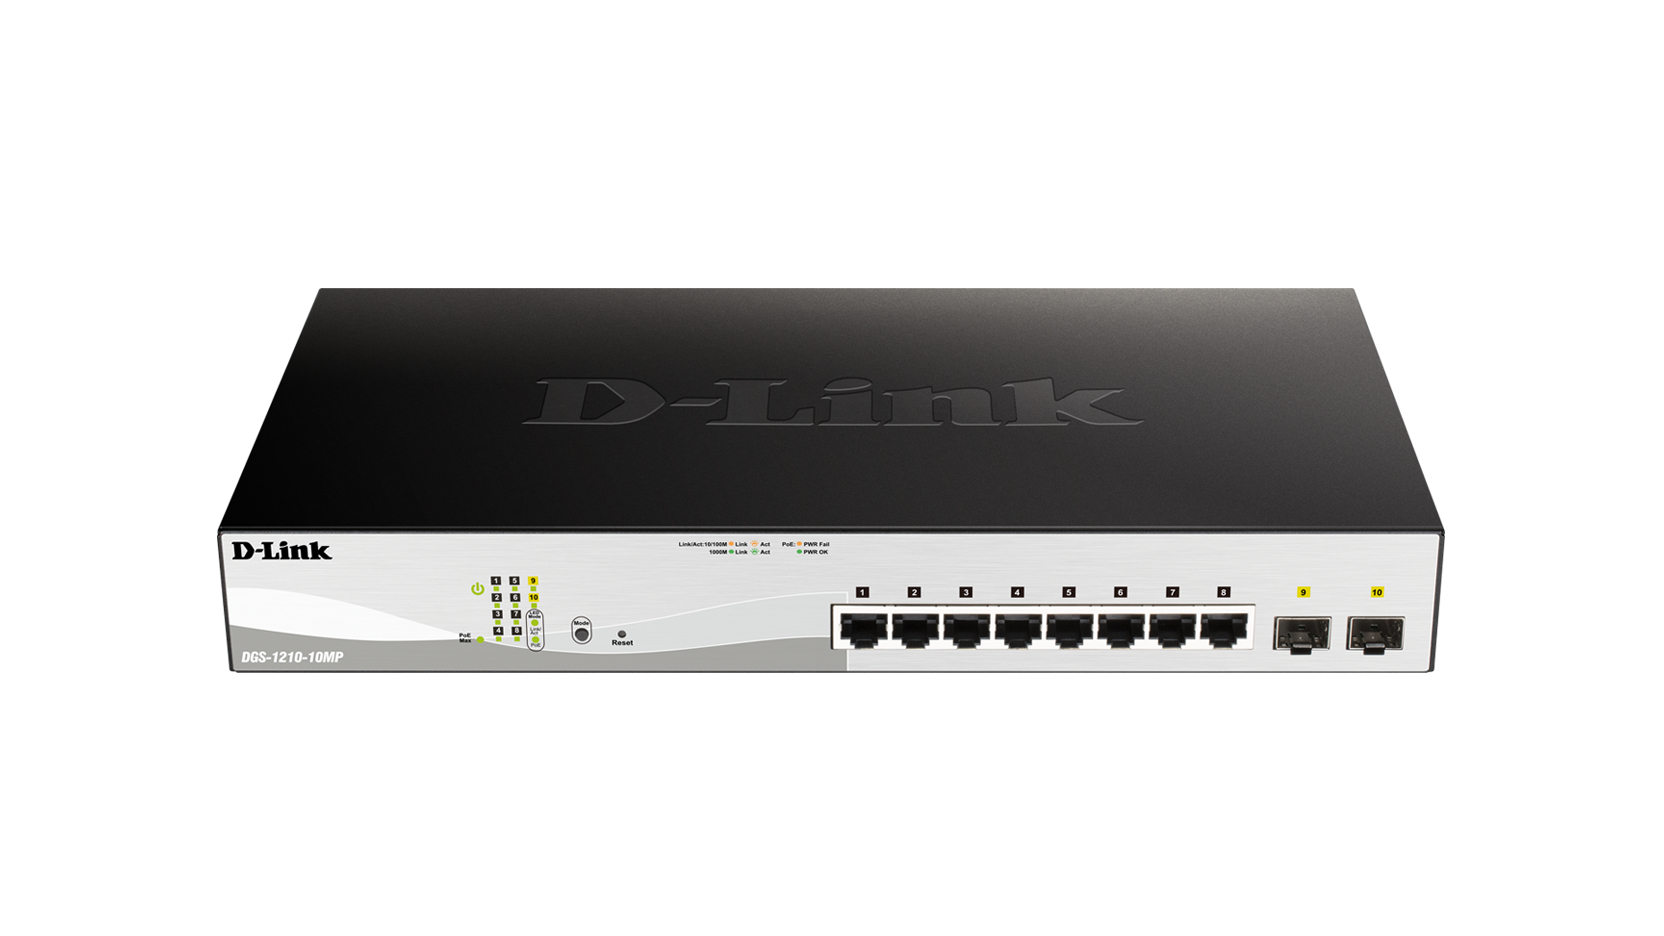 D-Link DGS-1210-10MP network switch Managed L2/L3 Gigabit Ethernet (10/100/1000) Black Power over Ethernet (PoE)